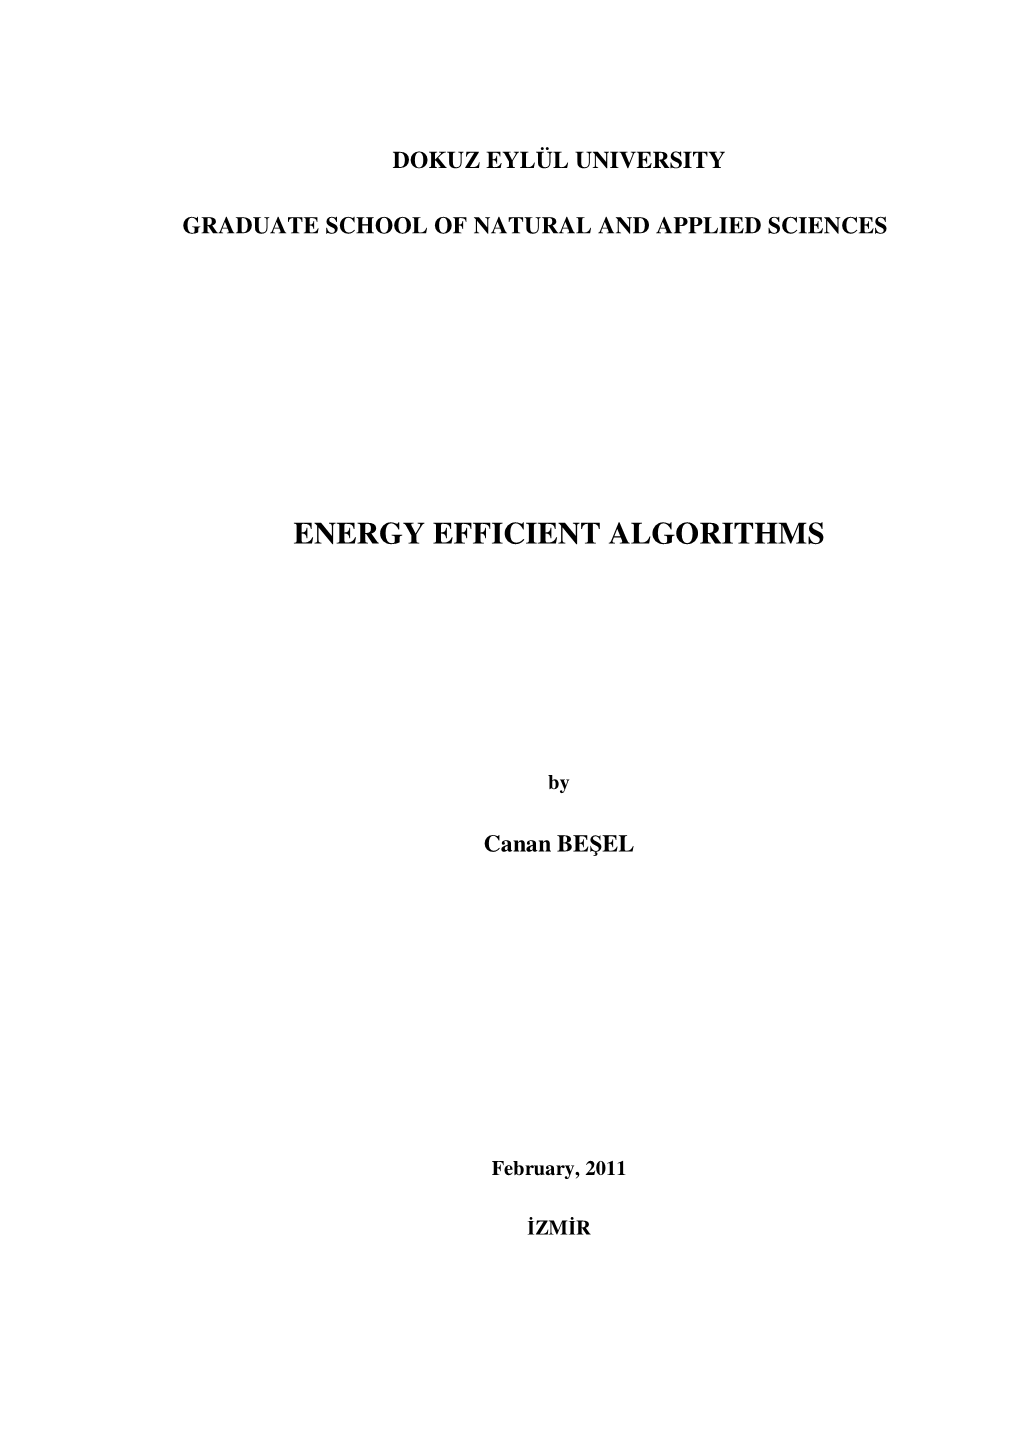 Energy Efficient Algorithms